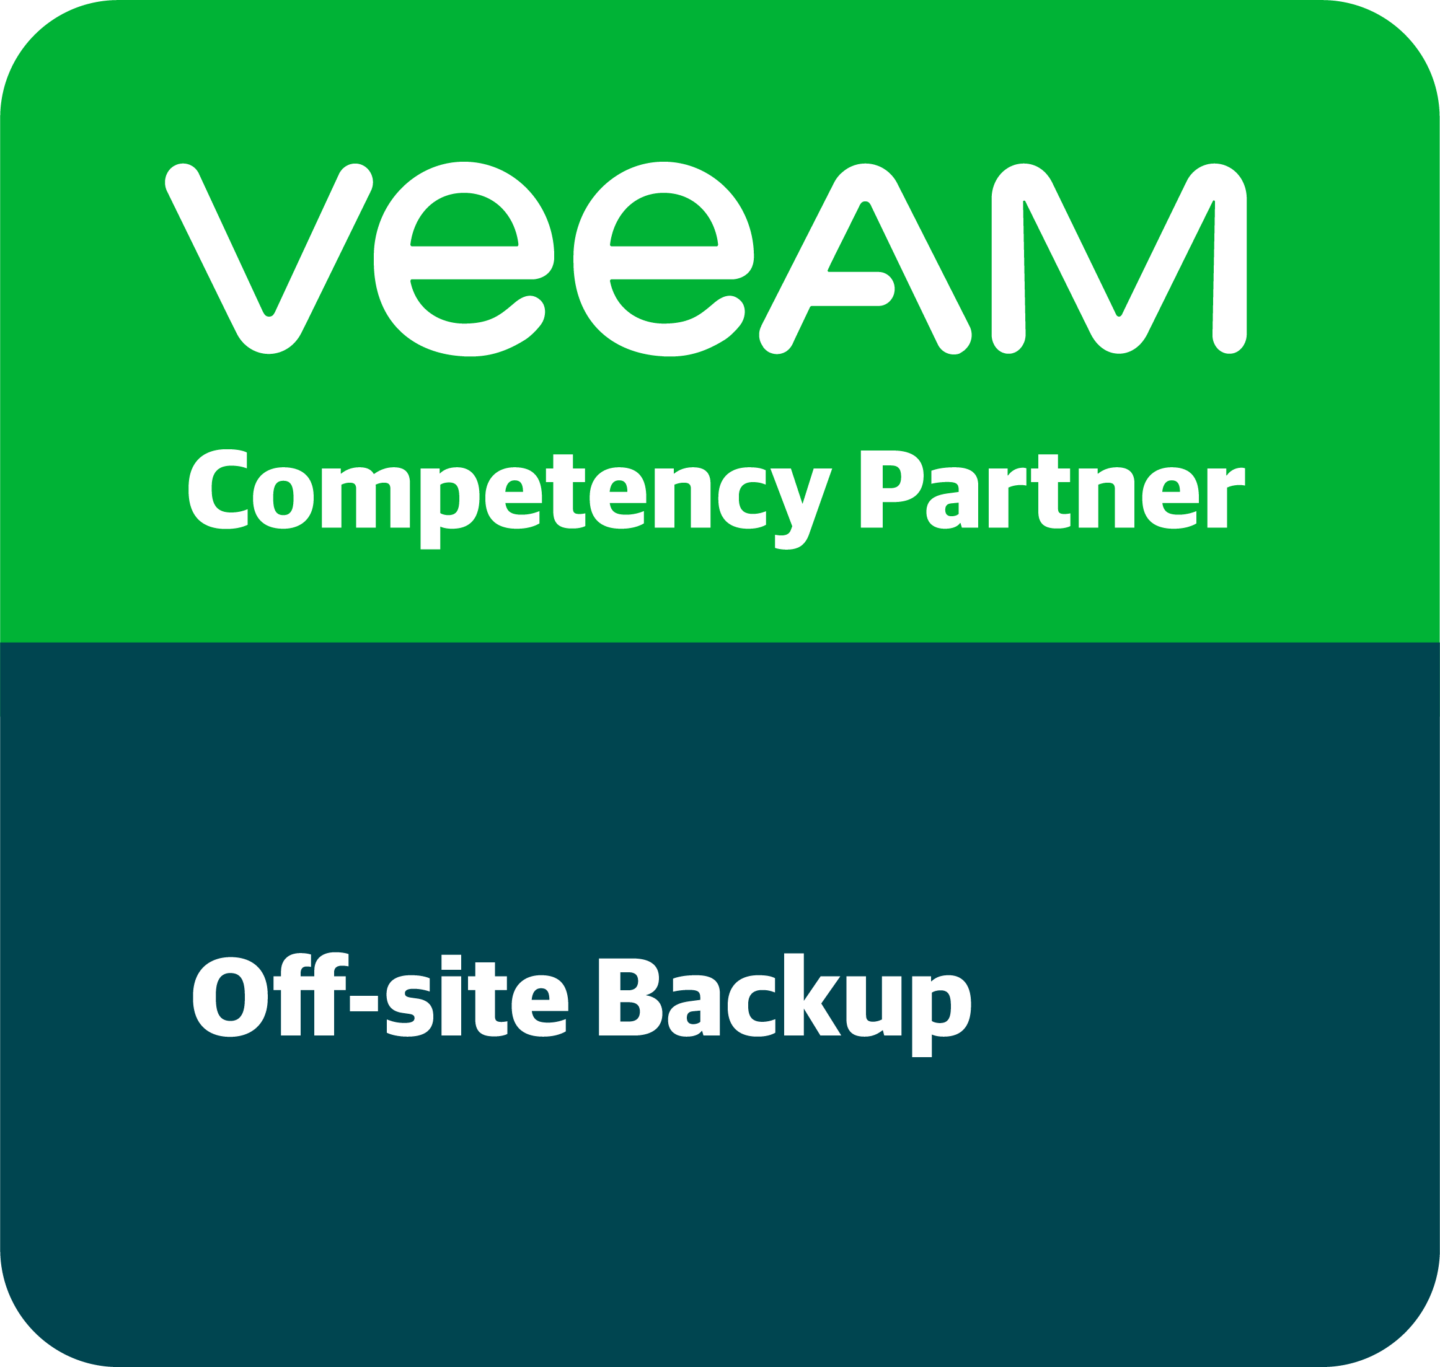 TIMG Veeam Competency Partner Offsite Backup